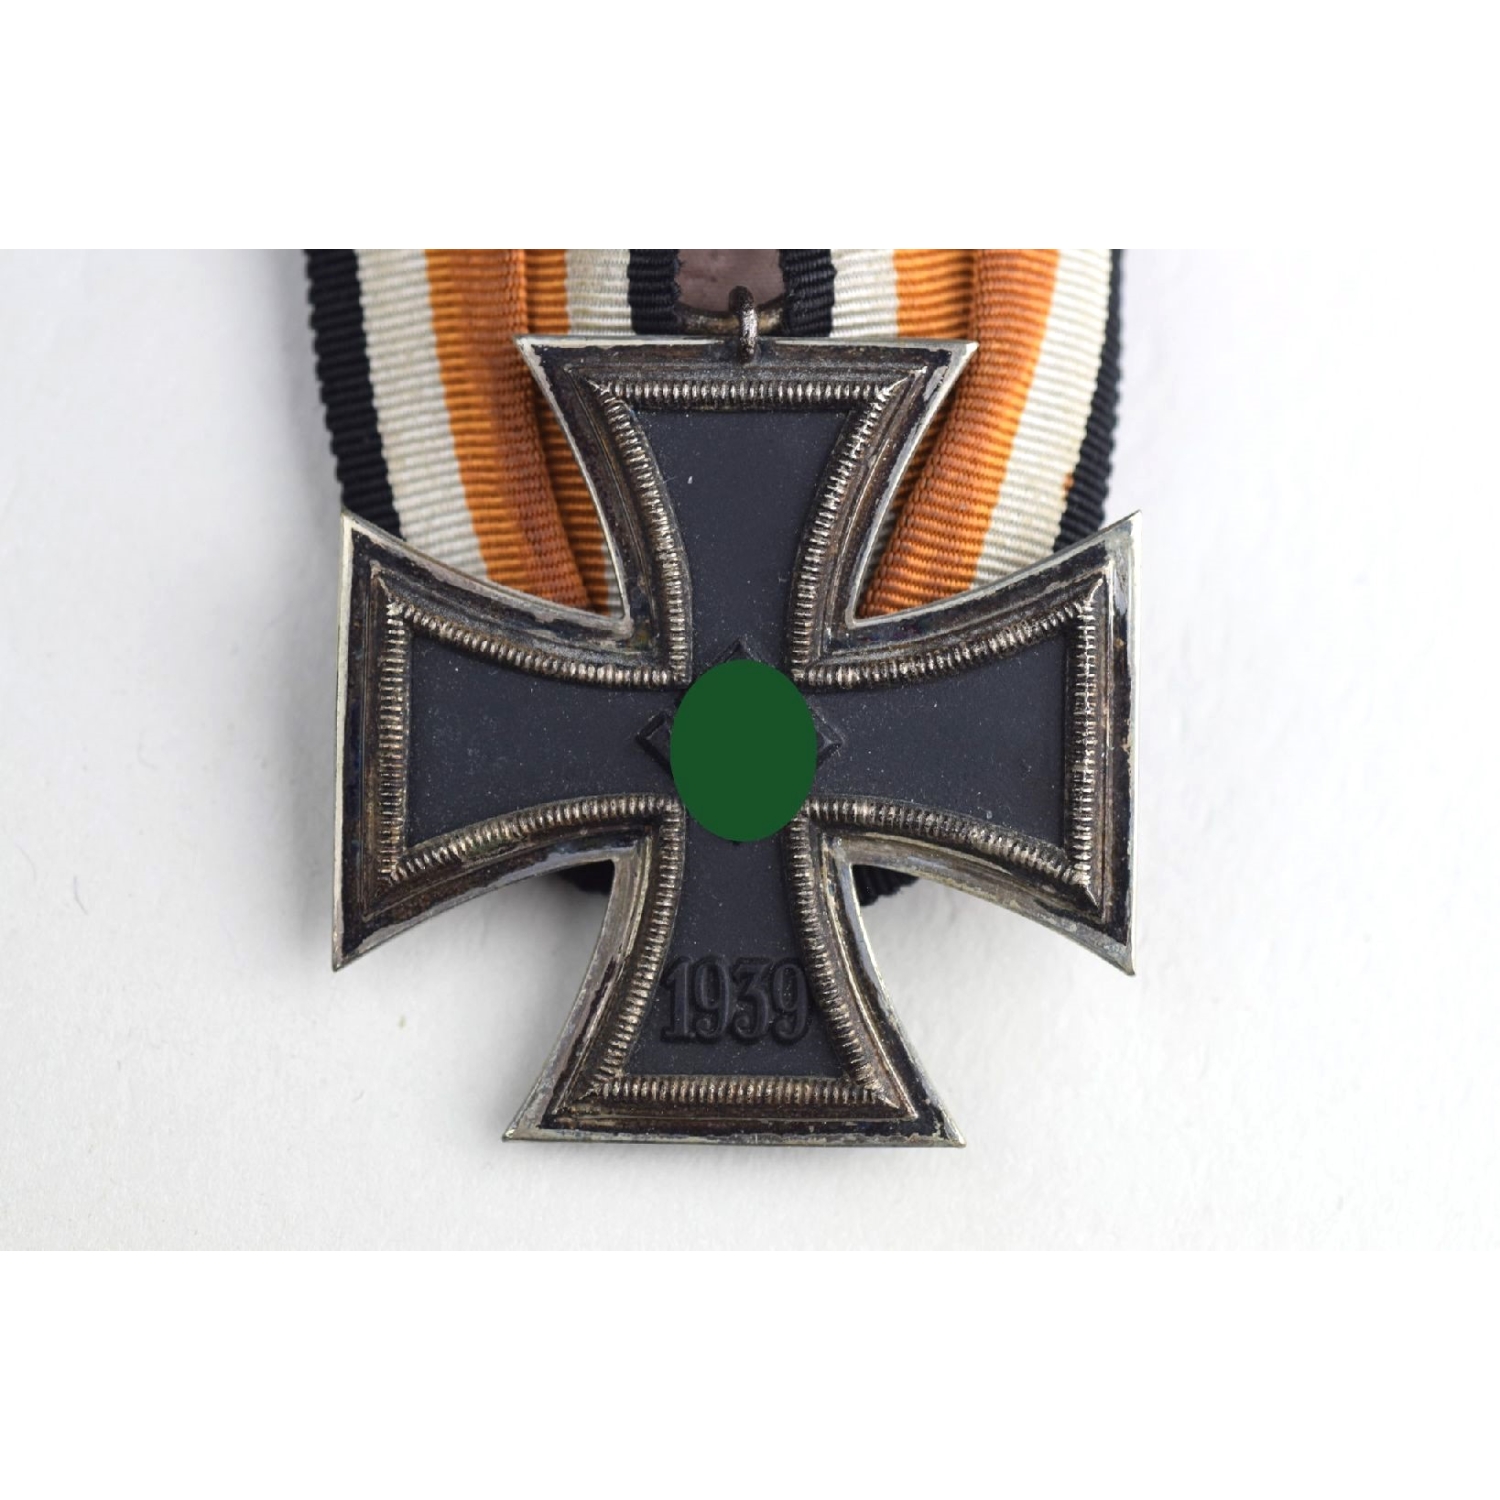 Eiserne Kreuz 2.Klasse 1939 an Einzelspange mit orangenem Band!